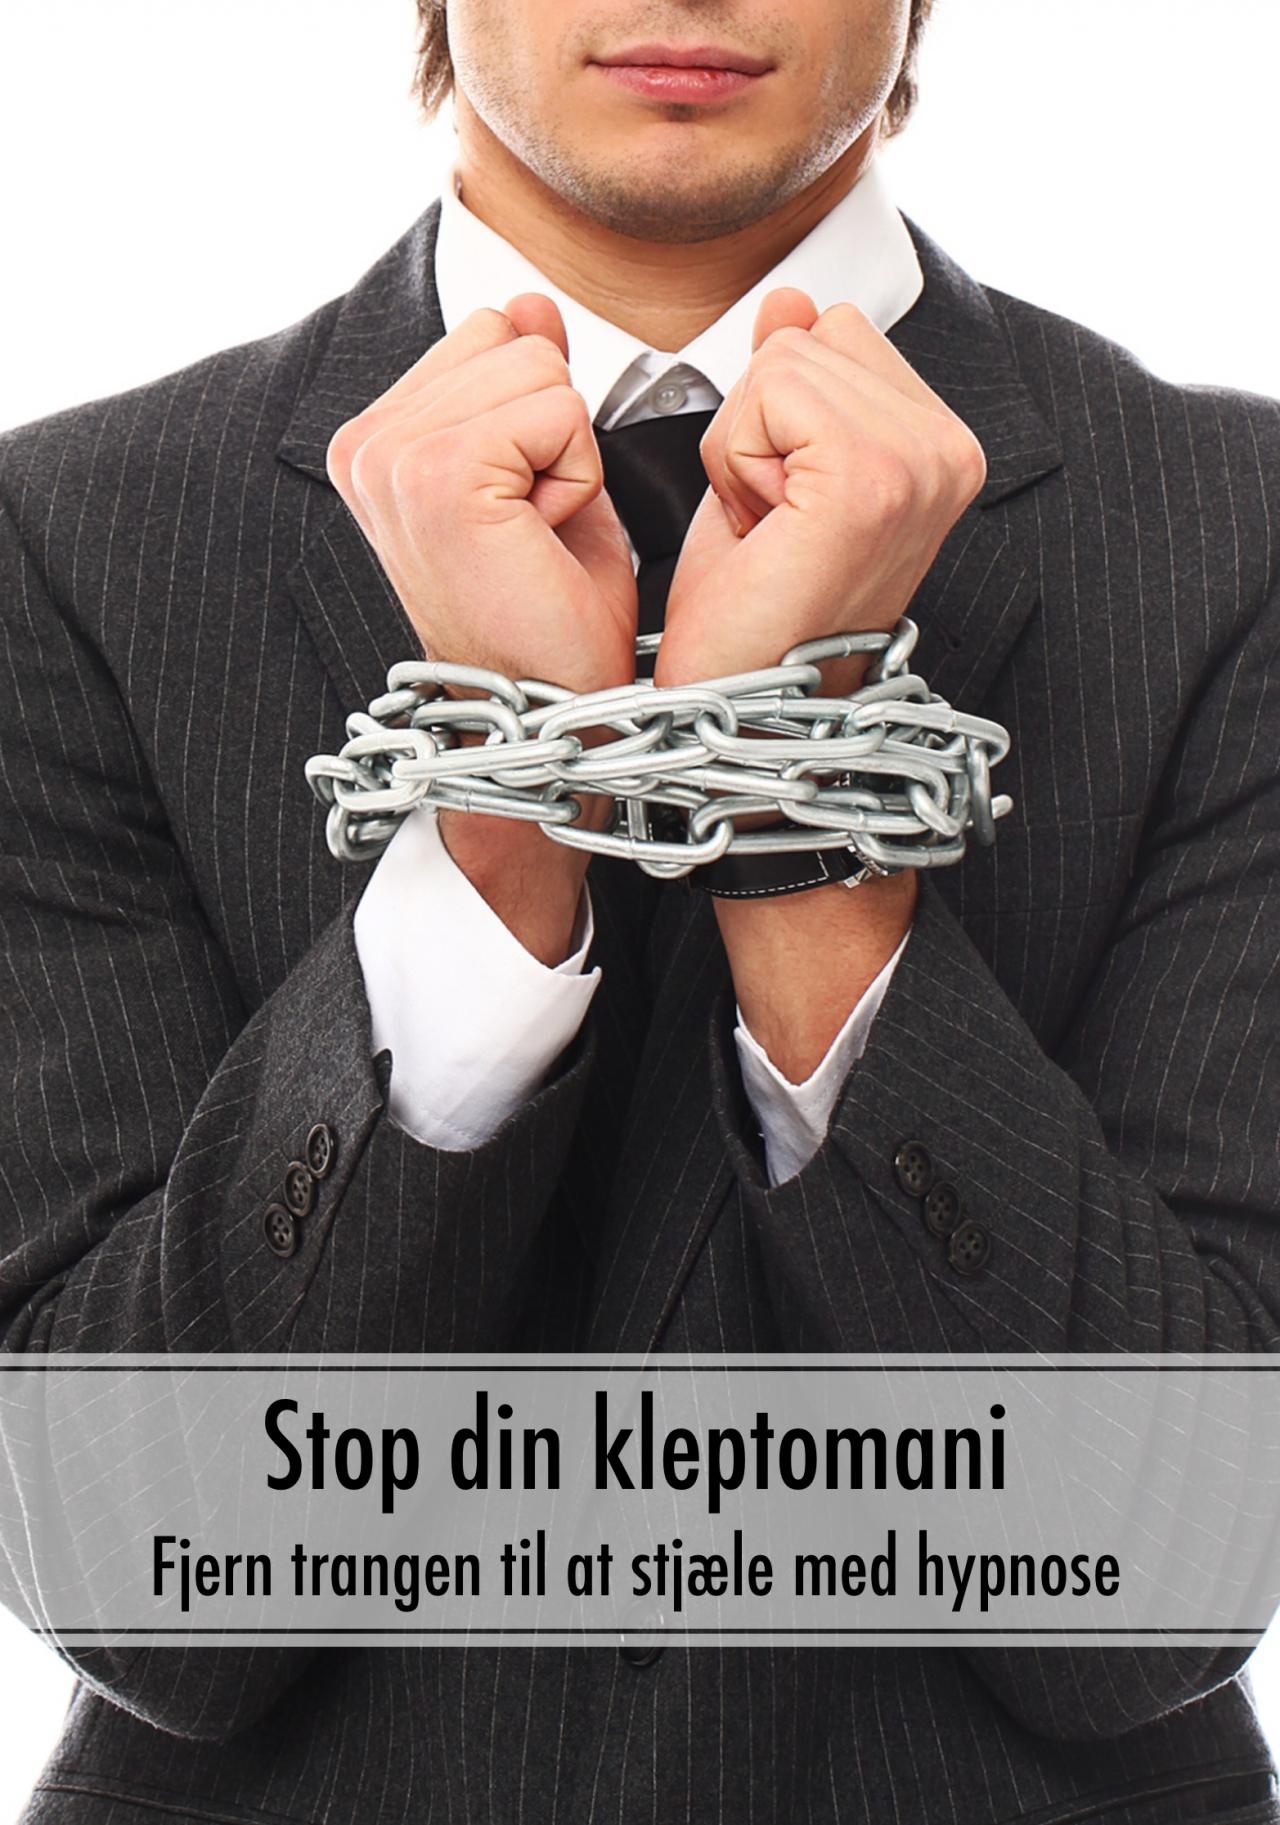 Se Stop din kleptomani - bearbejd trangen til at stjæle med hypnose hos Mindly.dk